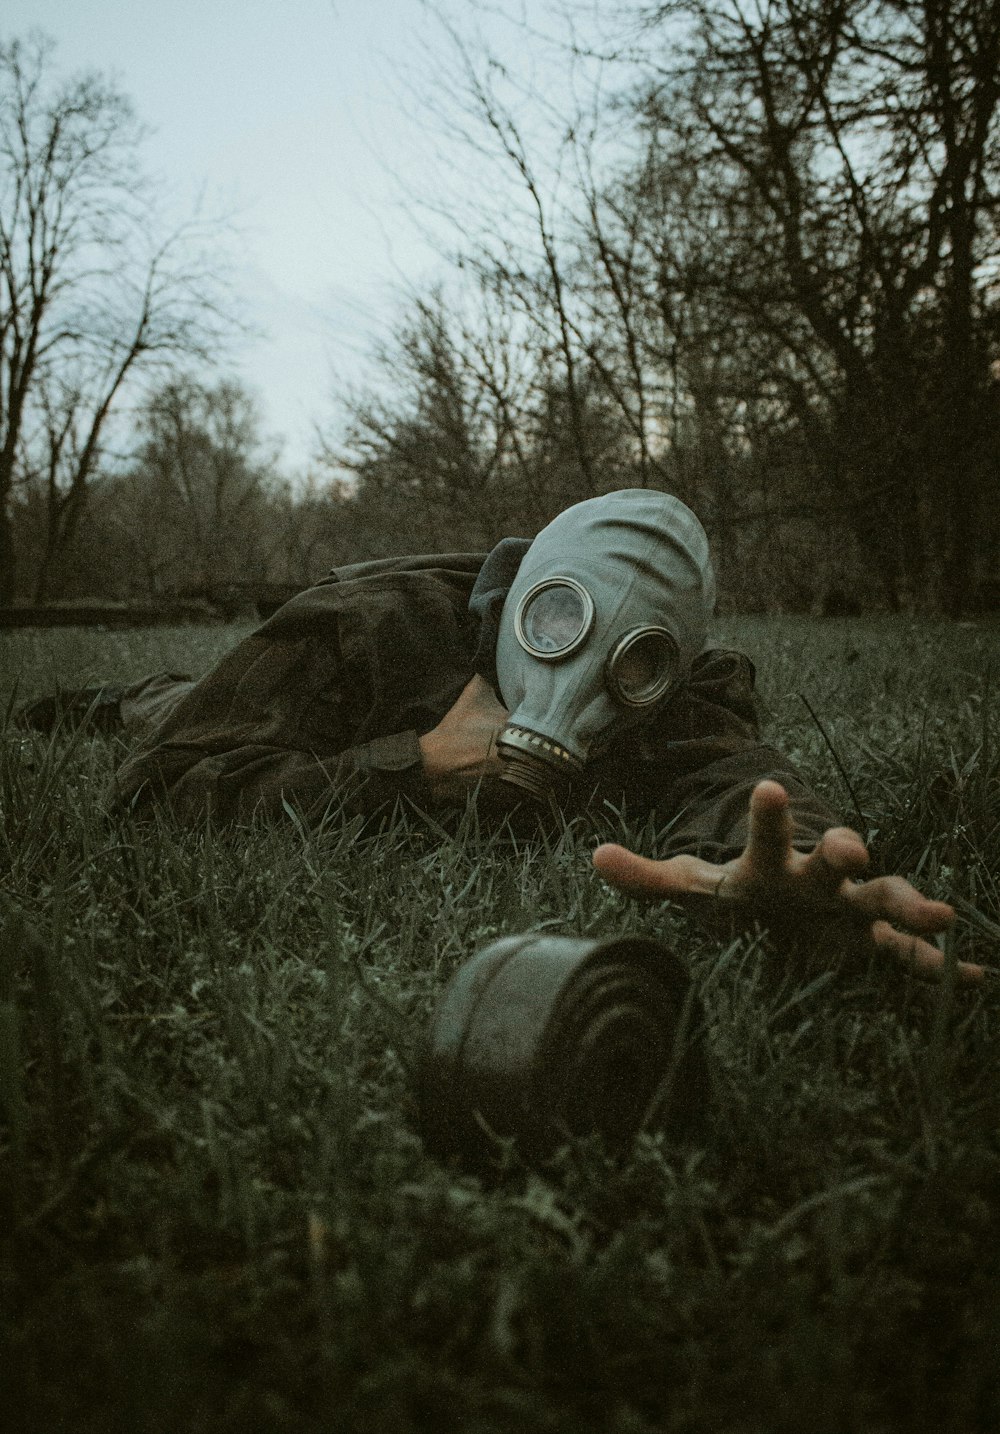 une personne portant un masque à gaz allongée dans l’herbe